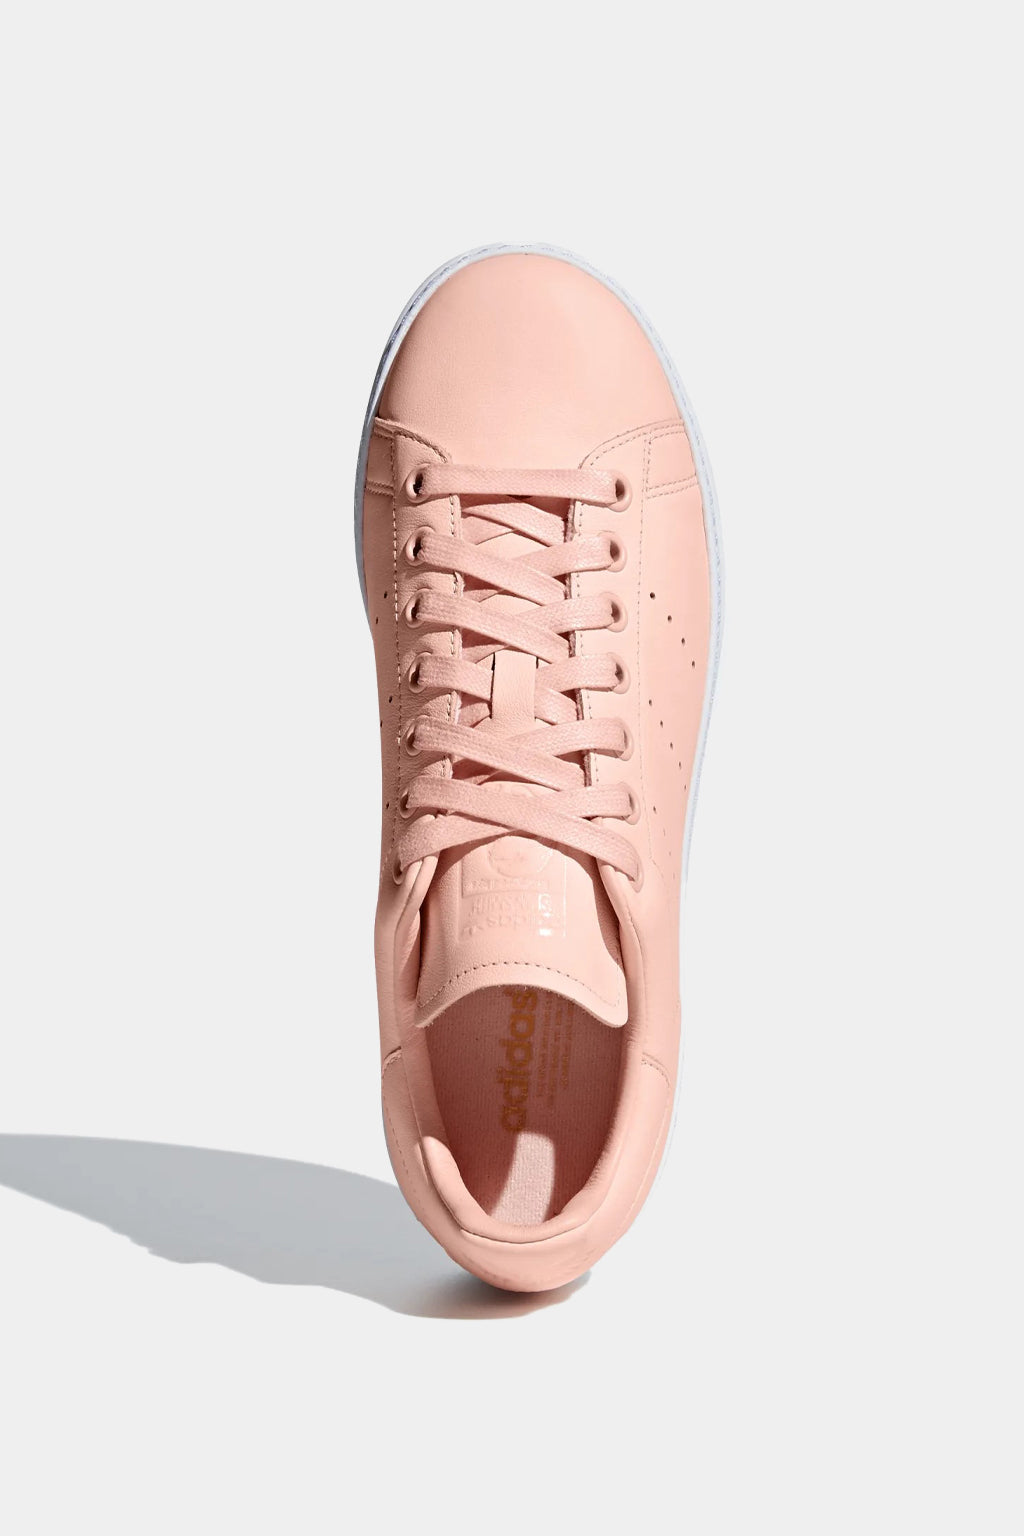 Adidas Originals - Stan Smith New Bold Shoes